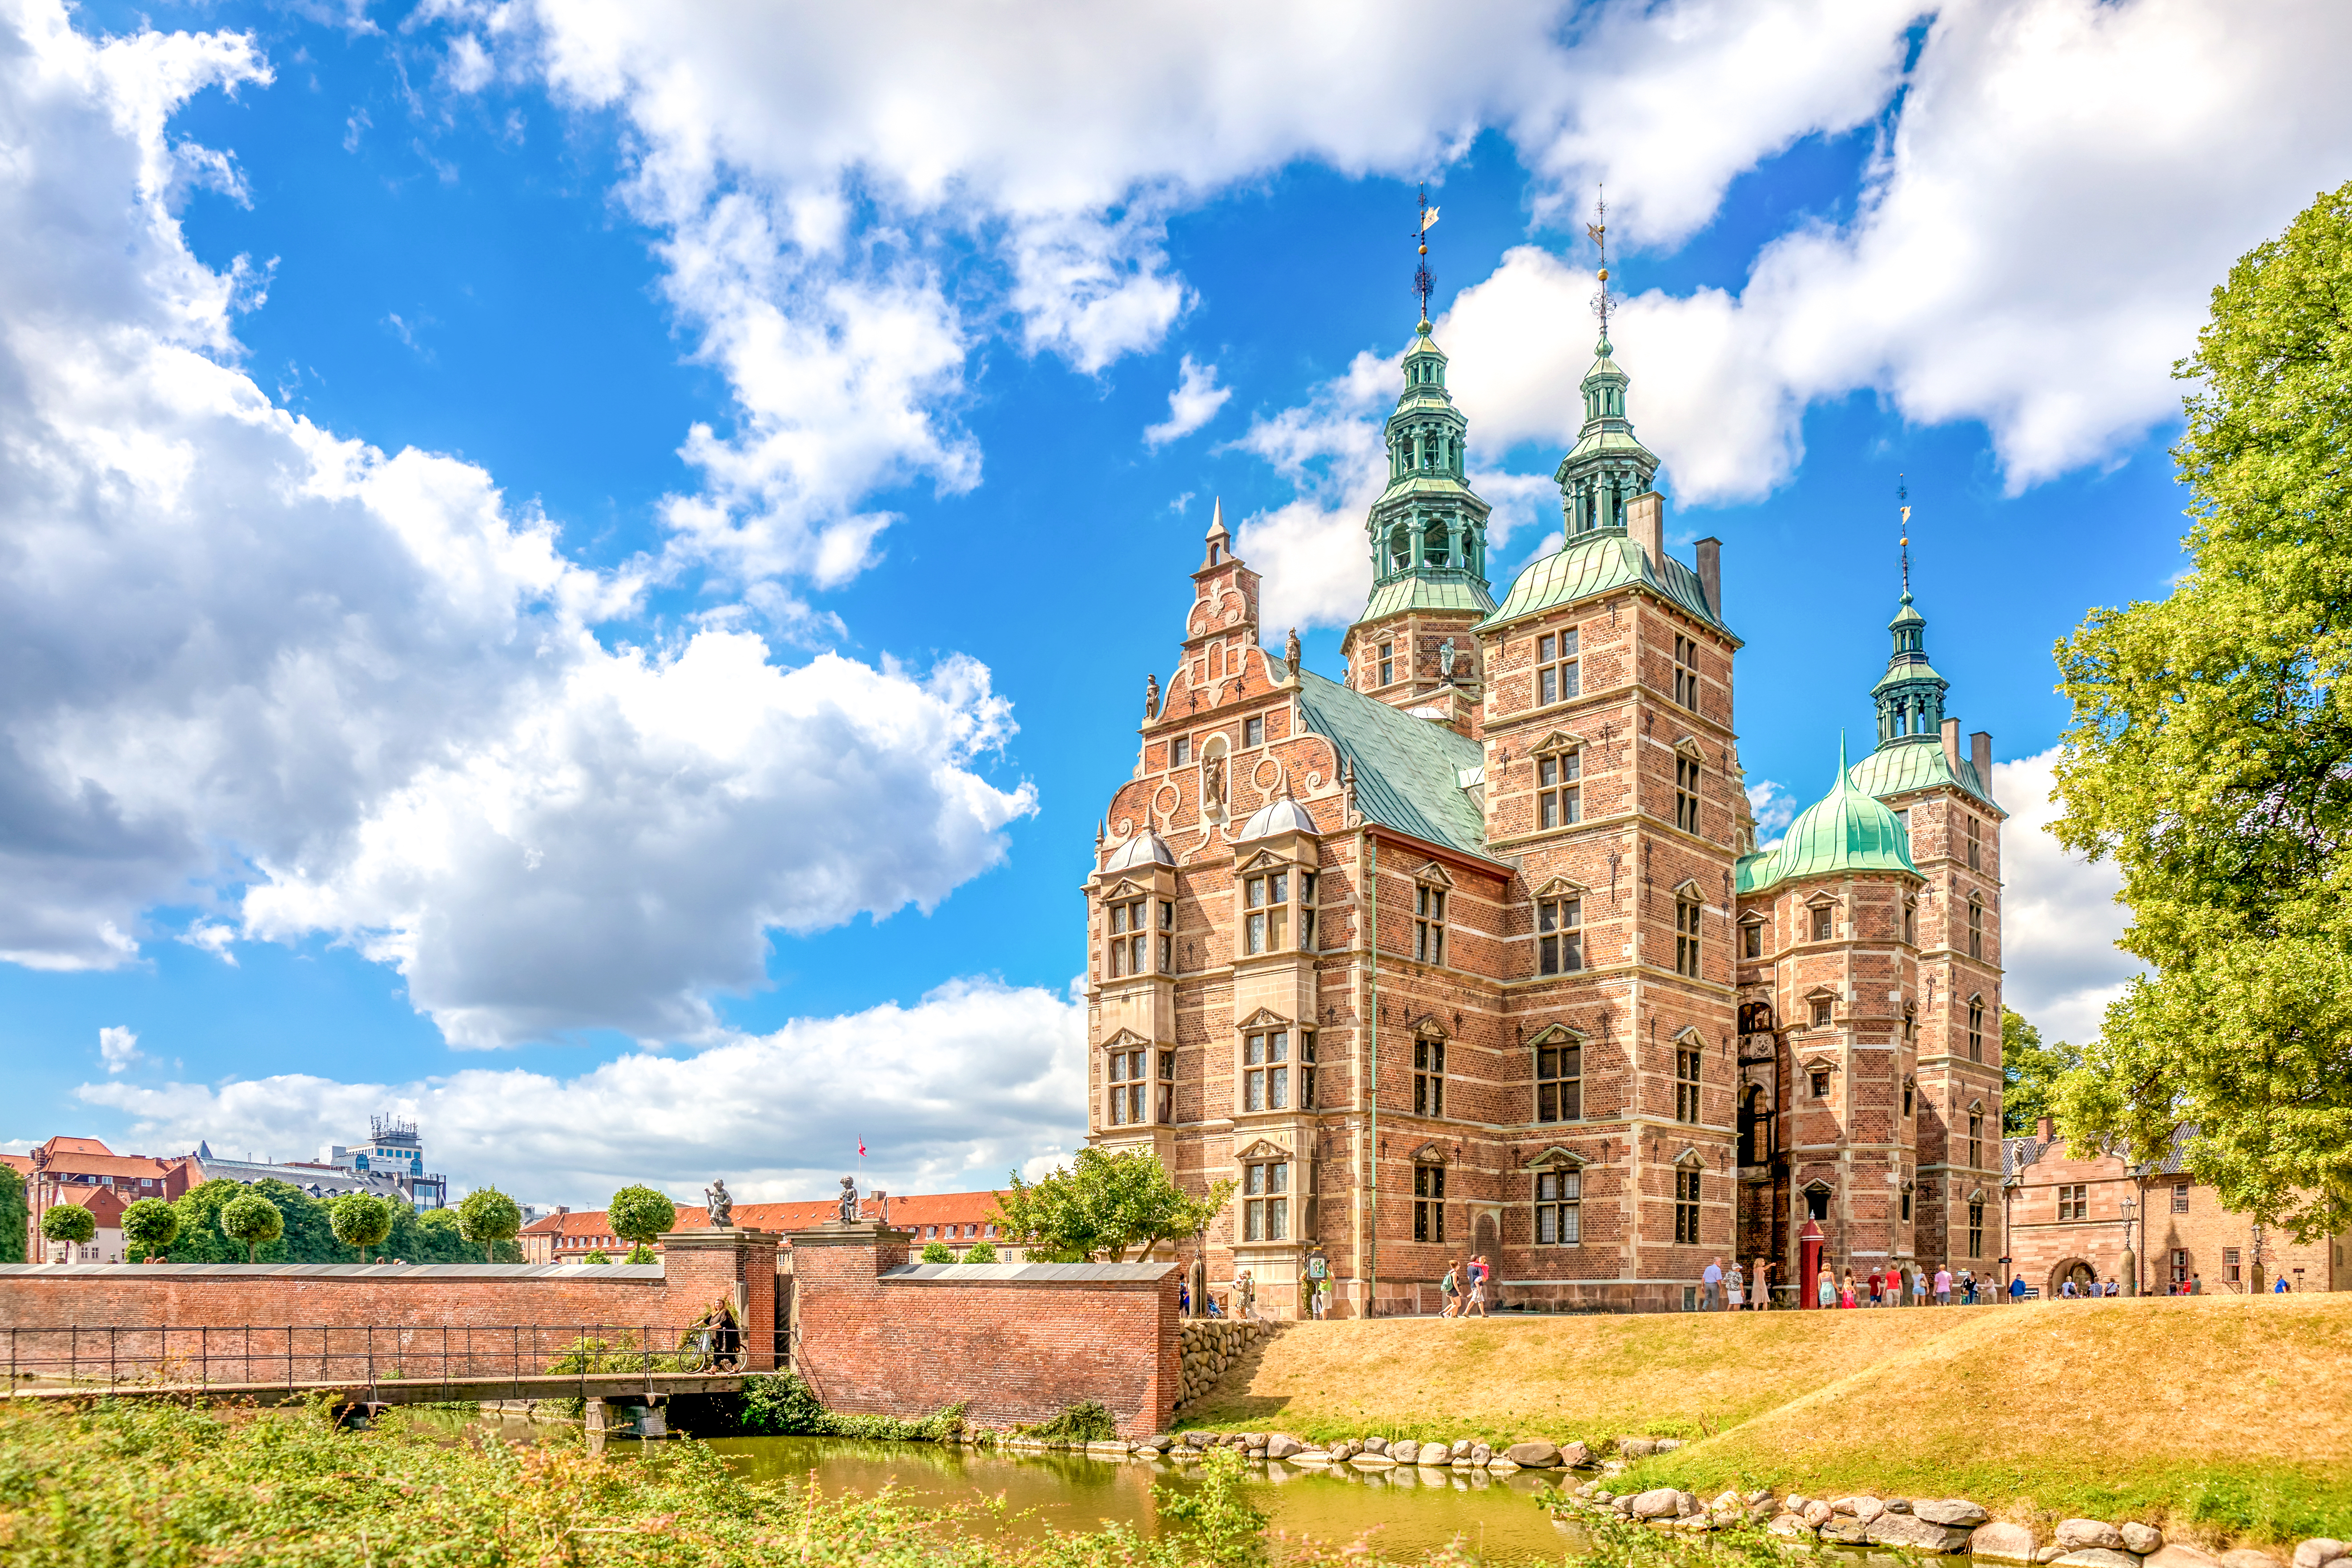 Rosenborg Castle, Copenhagen in Denmark